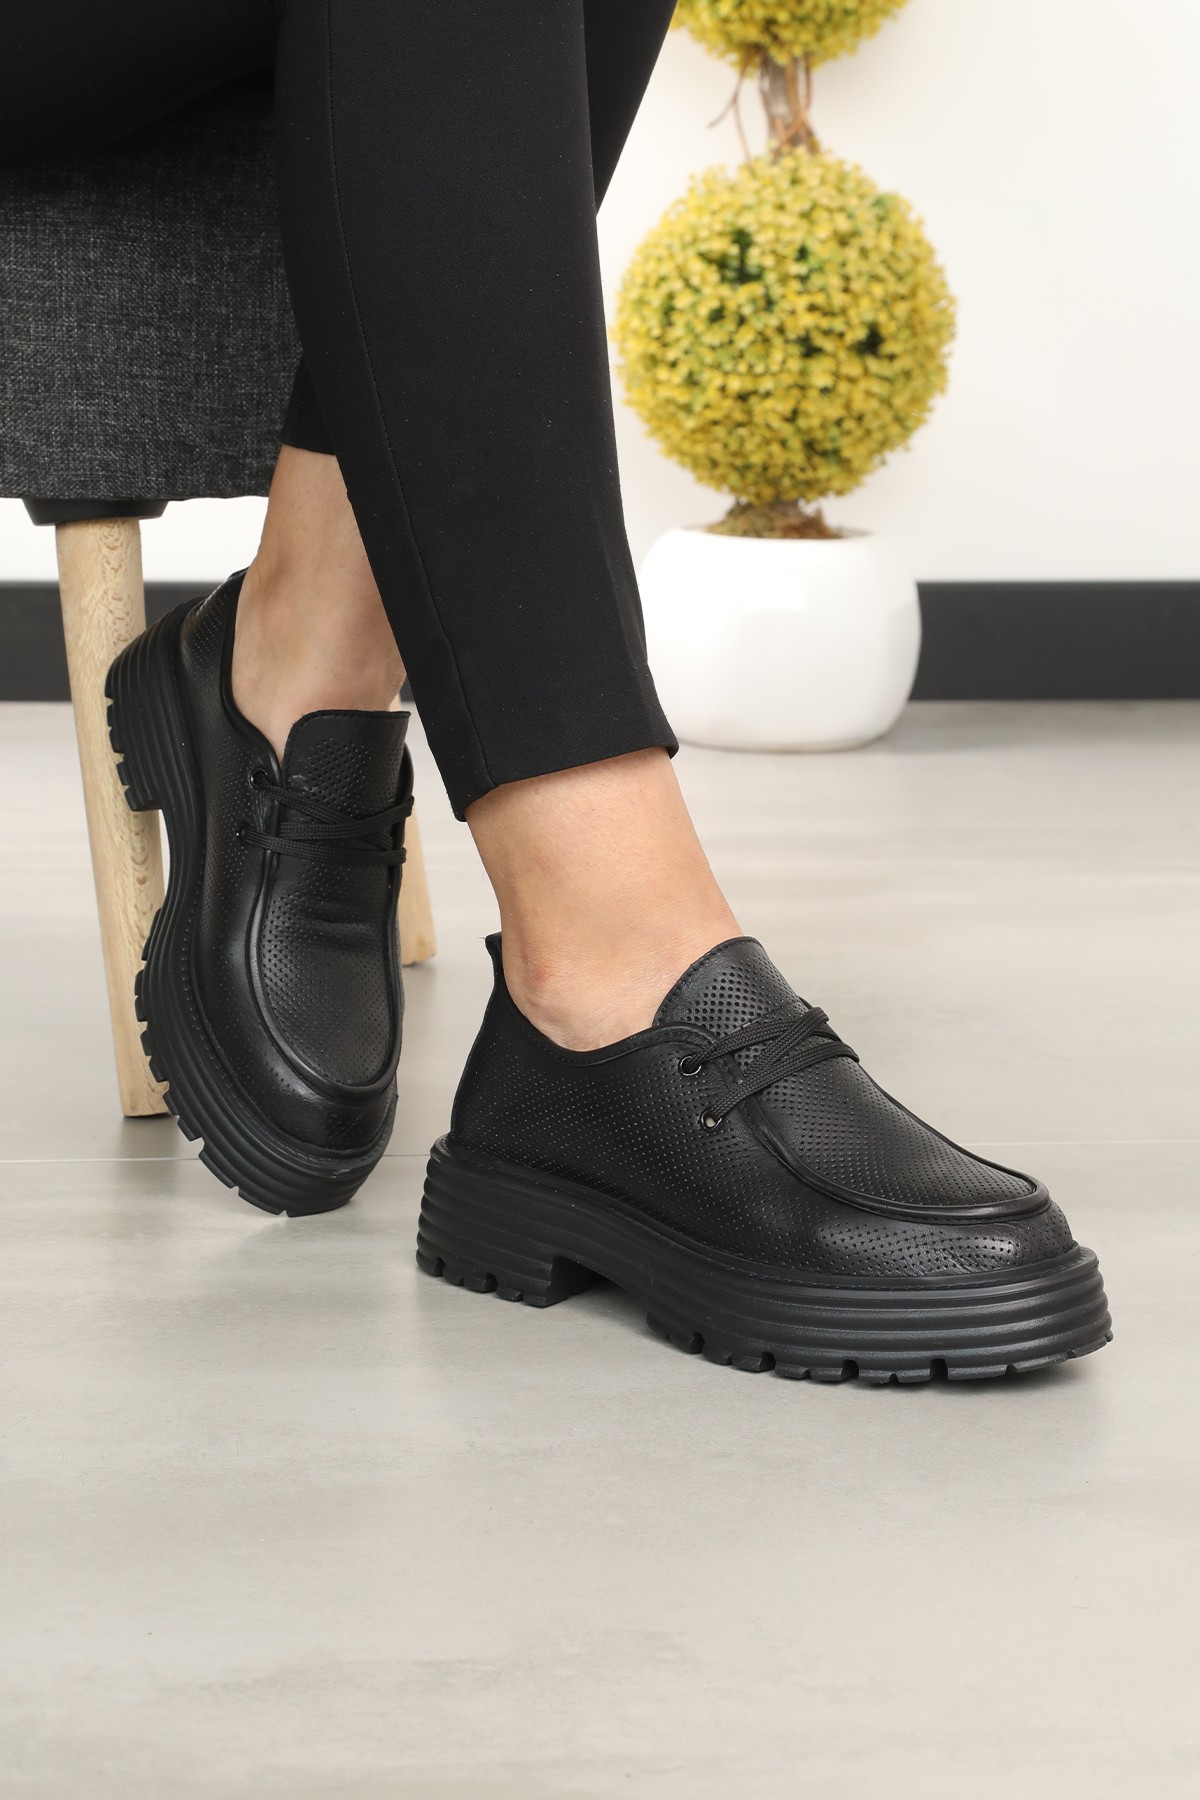 Cooliza Hakiki Deri Bağcıklı Baskılı Rahat Kadın Günlük Casual Ayakkabı - Siyah